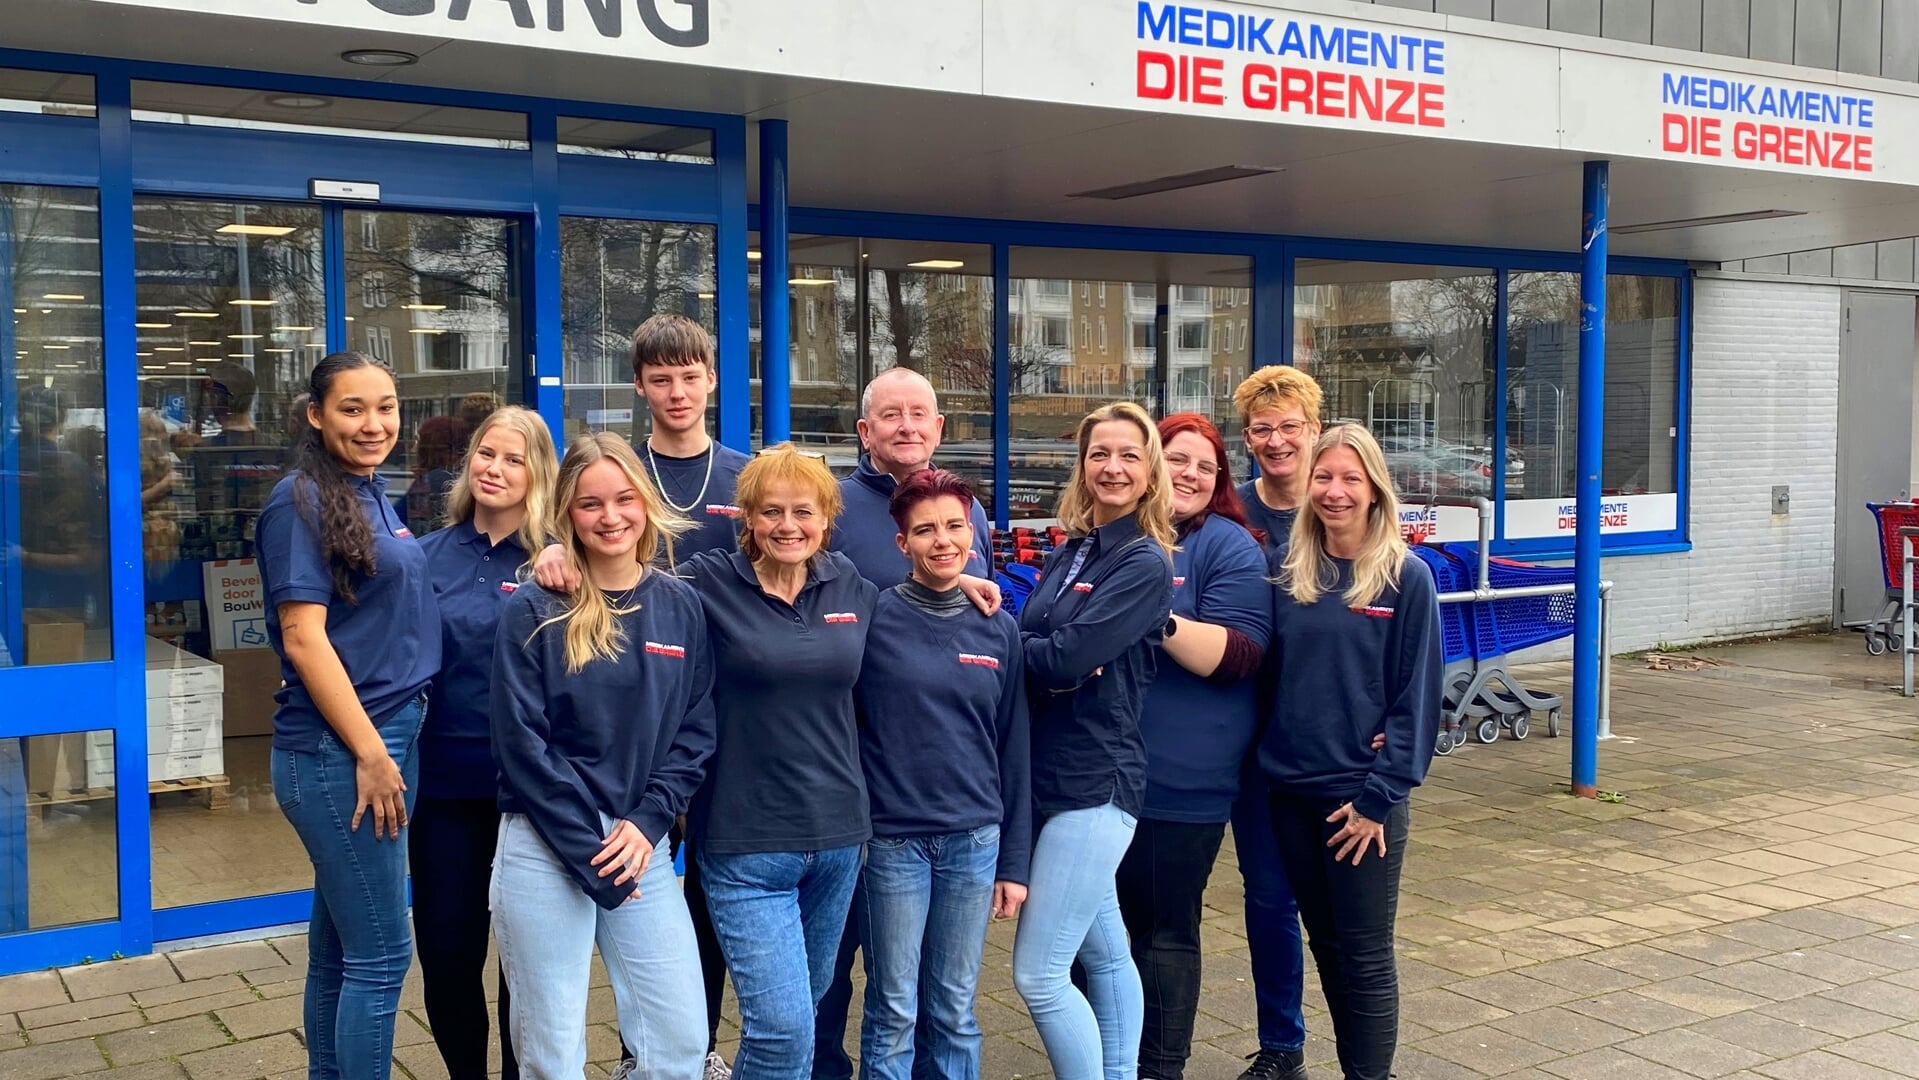 Het team van het Zaandamse Die Grenze filiaal heet de klanten vanaf donderdag 8.30 uur van harte welkom.